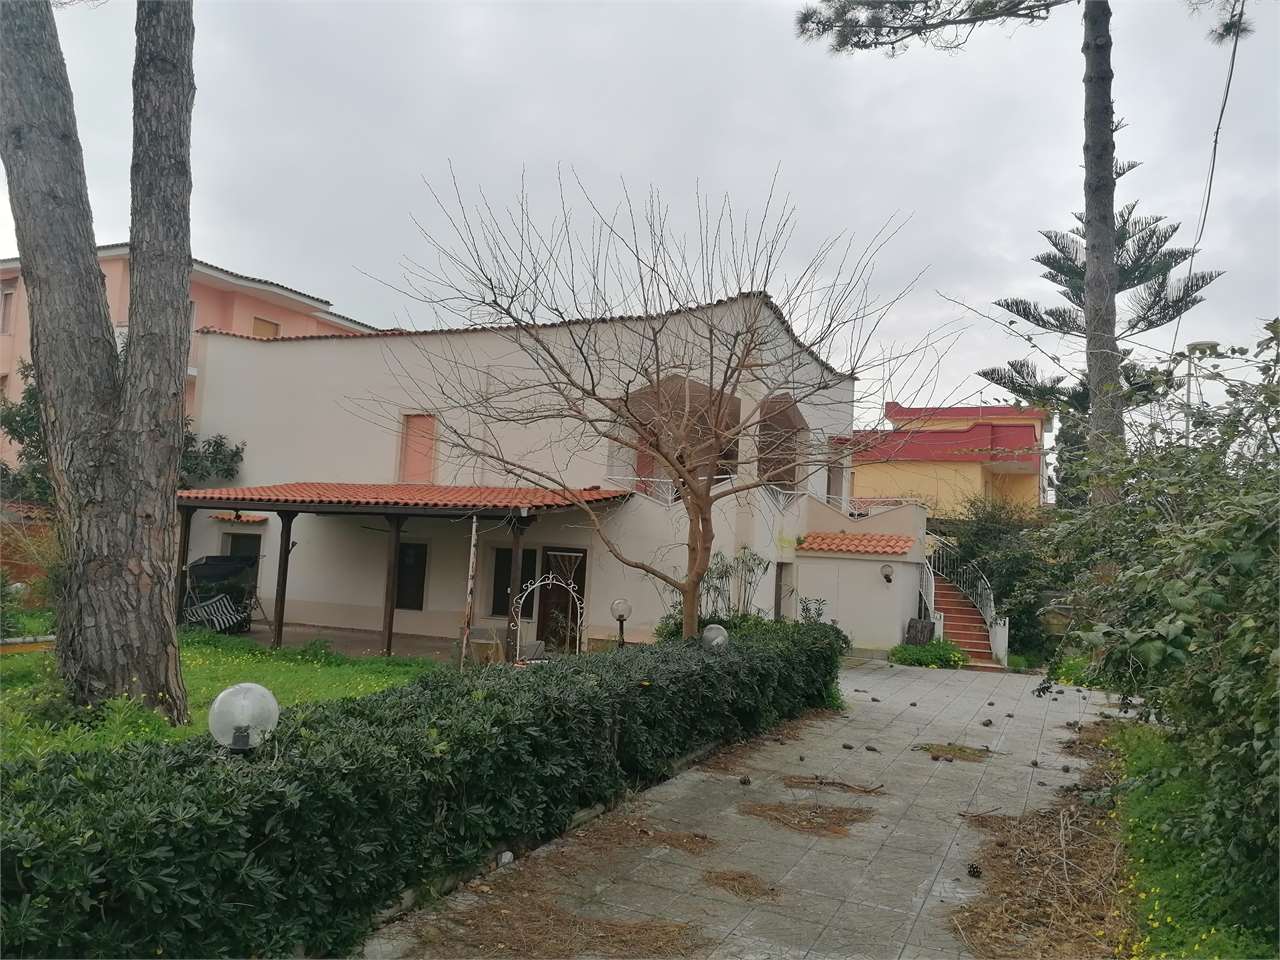 Villa in vendita a Castel Volturno, 11 locali, prezzo € 85.000 | PortaleAgenzieImmobiliari.it